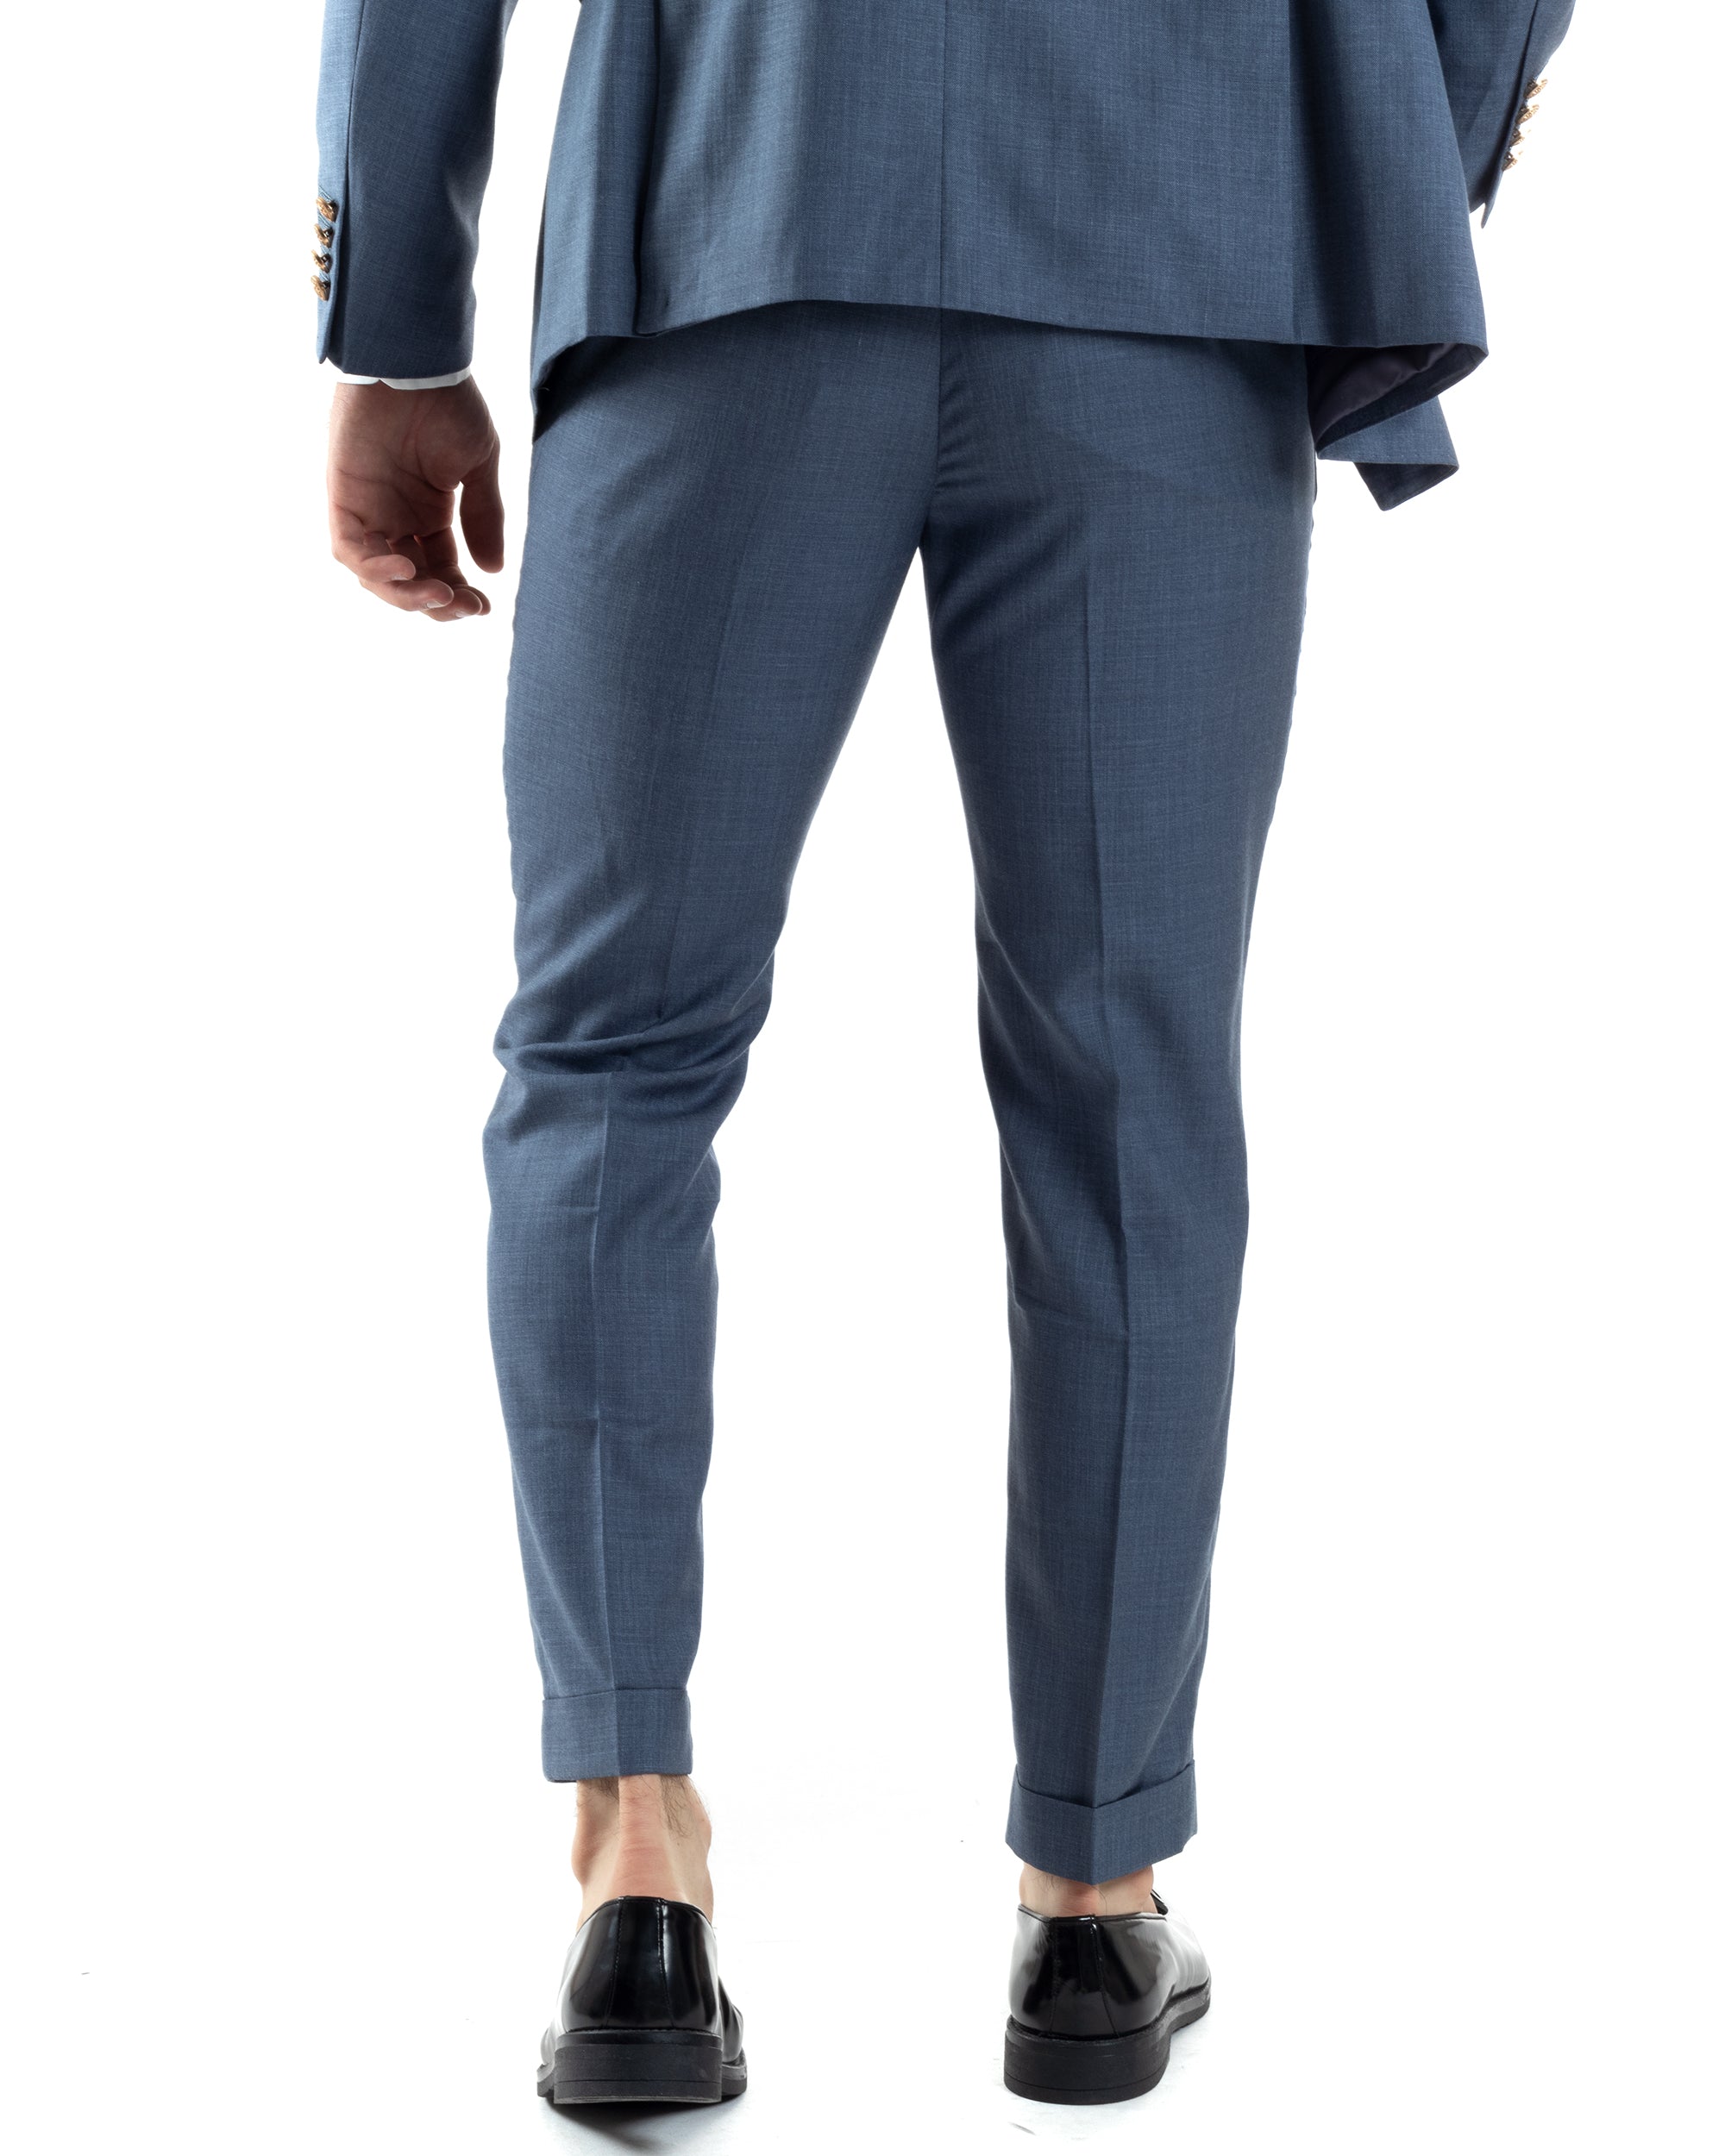 Abito Uomo Doppiopetto Vestito Completo Giacca Pantaloni Bottoni Metallo Blu Melangiato Elegante Casual GIOSAL-AE1045A